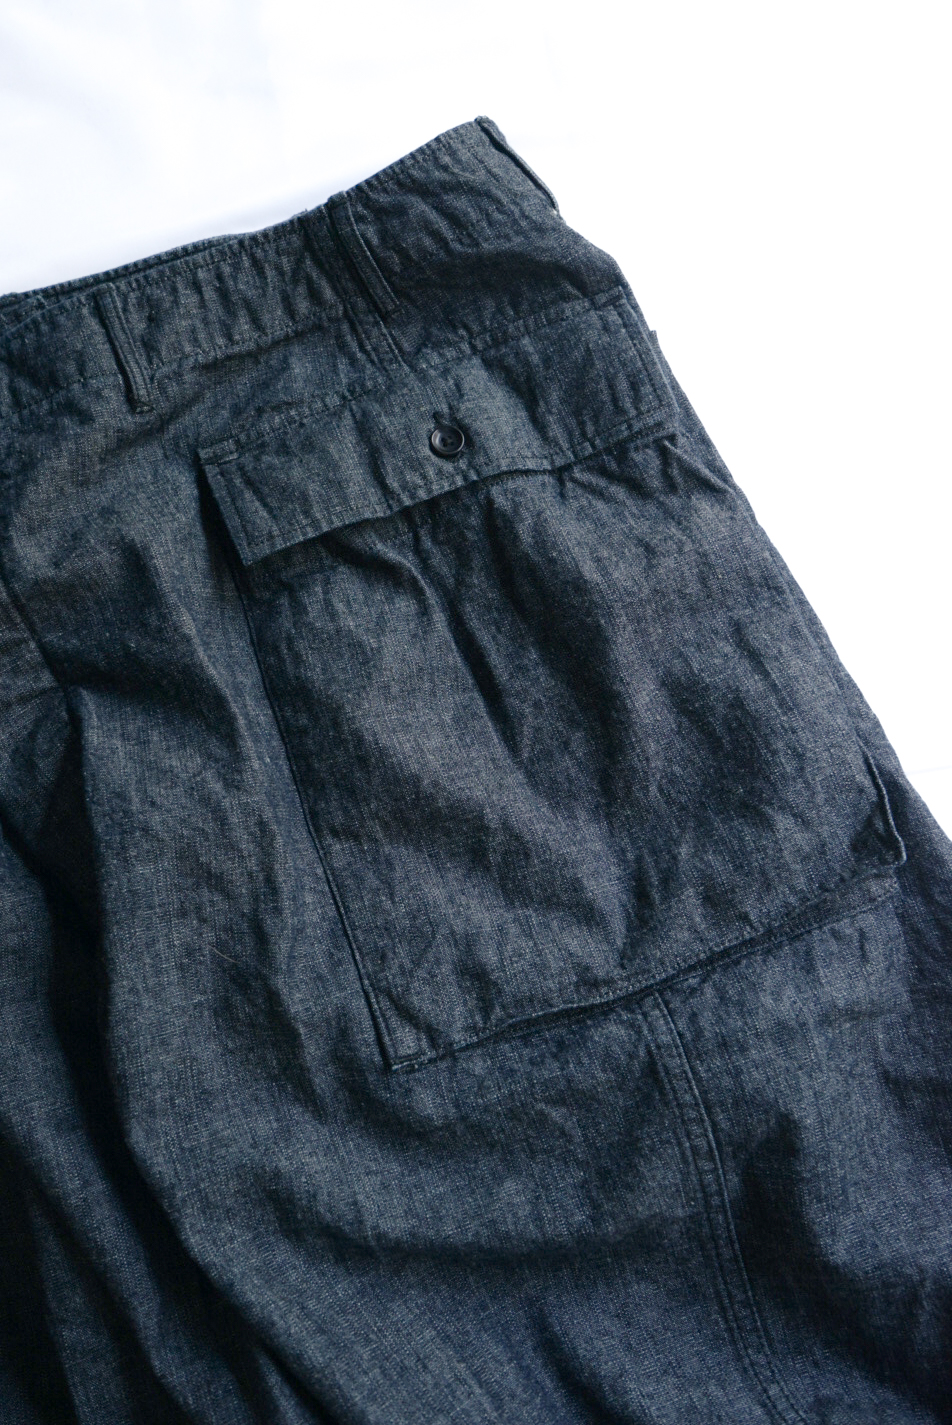 43 Cargo Pants Dungaree Cotton Linen Indigo - BONCOURA - ARCH 